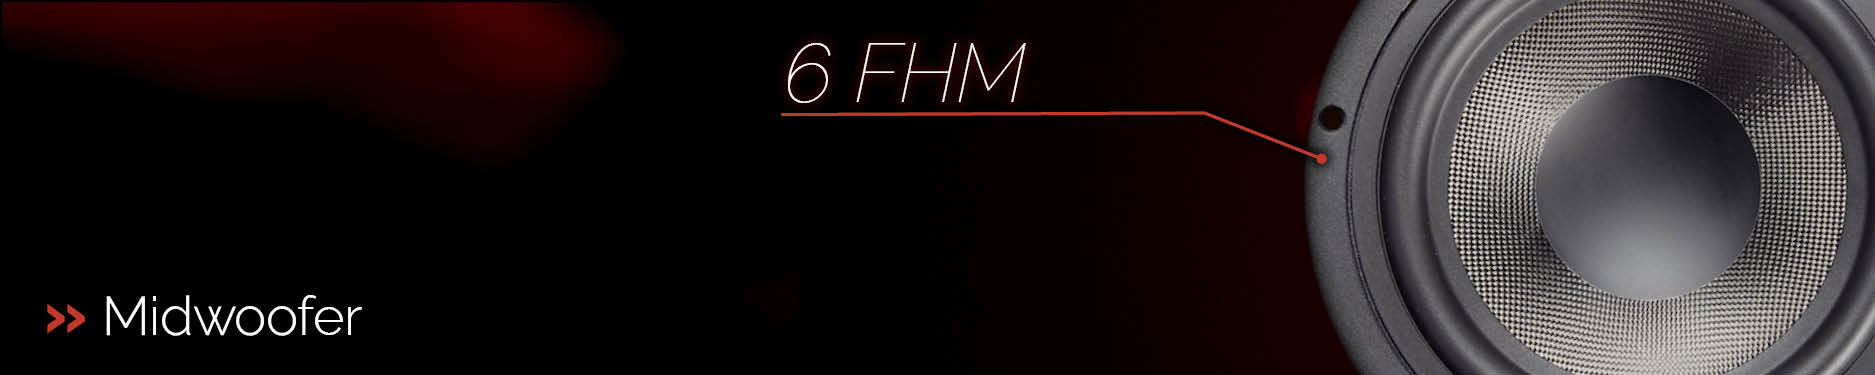 Midwoofer - 6FHM